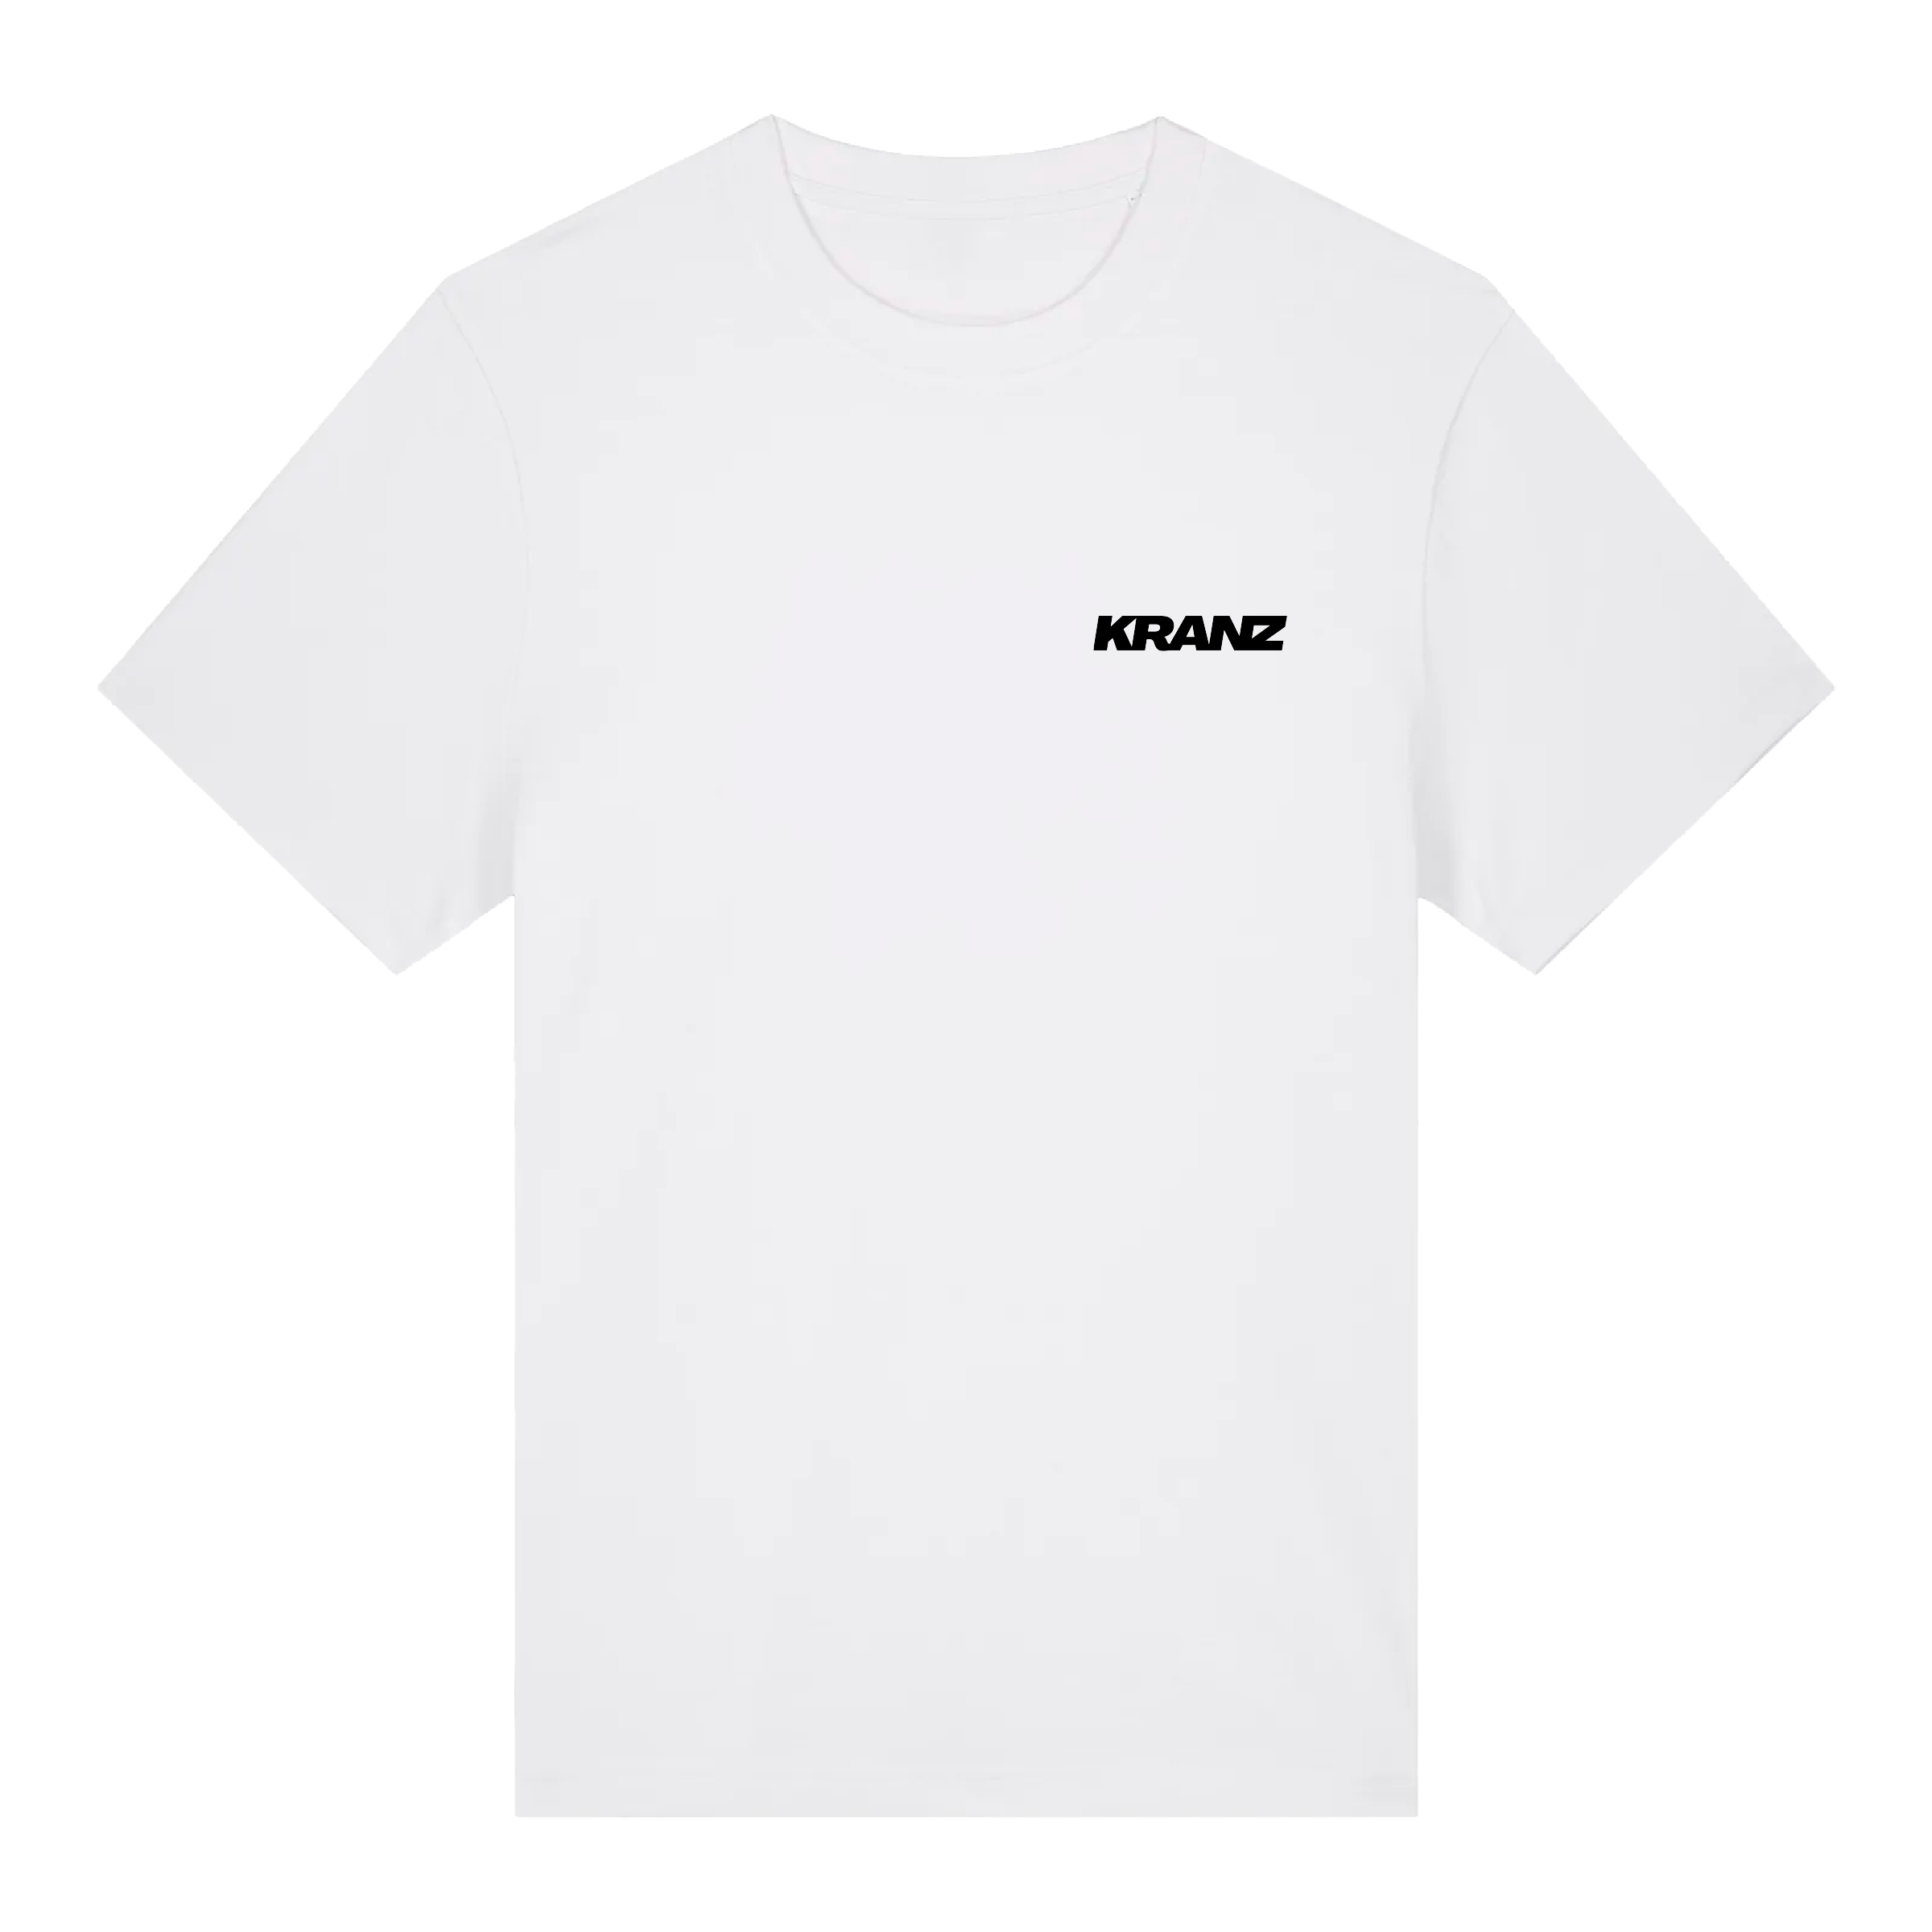 Kranz - Shirt